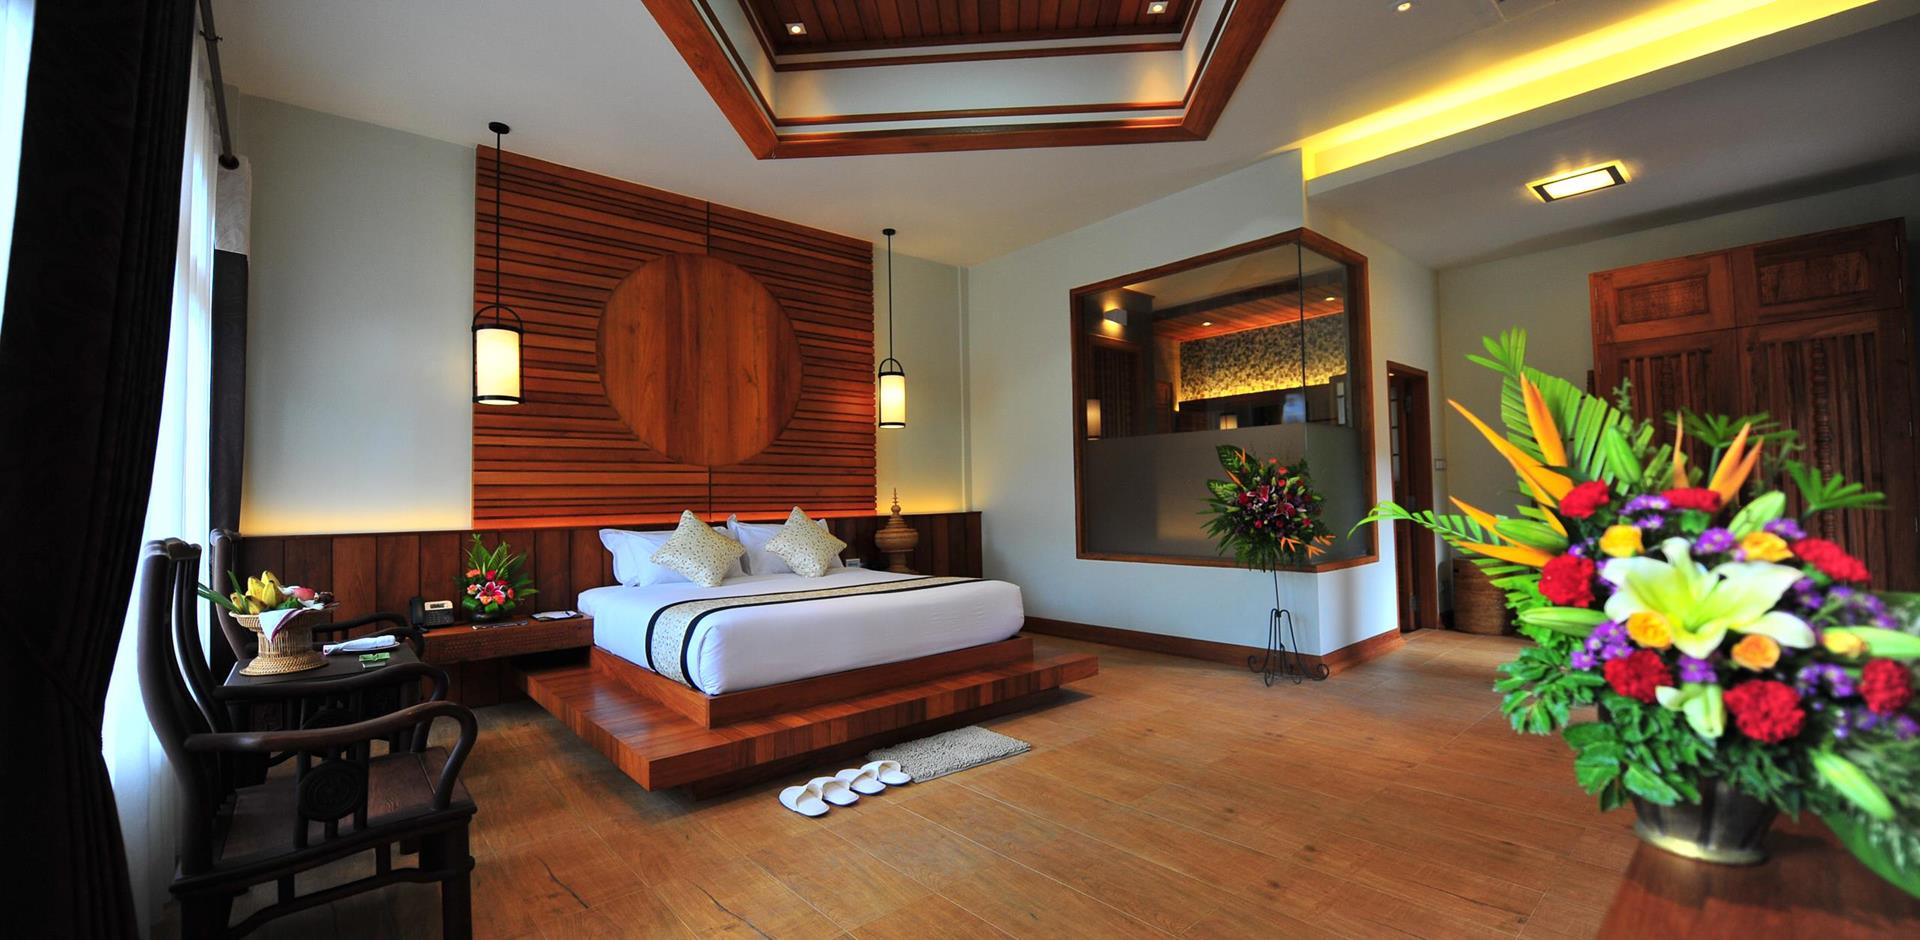 Rupar Mandalar Resort, Myanmar room suite